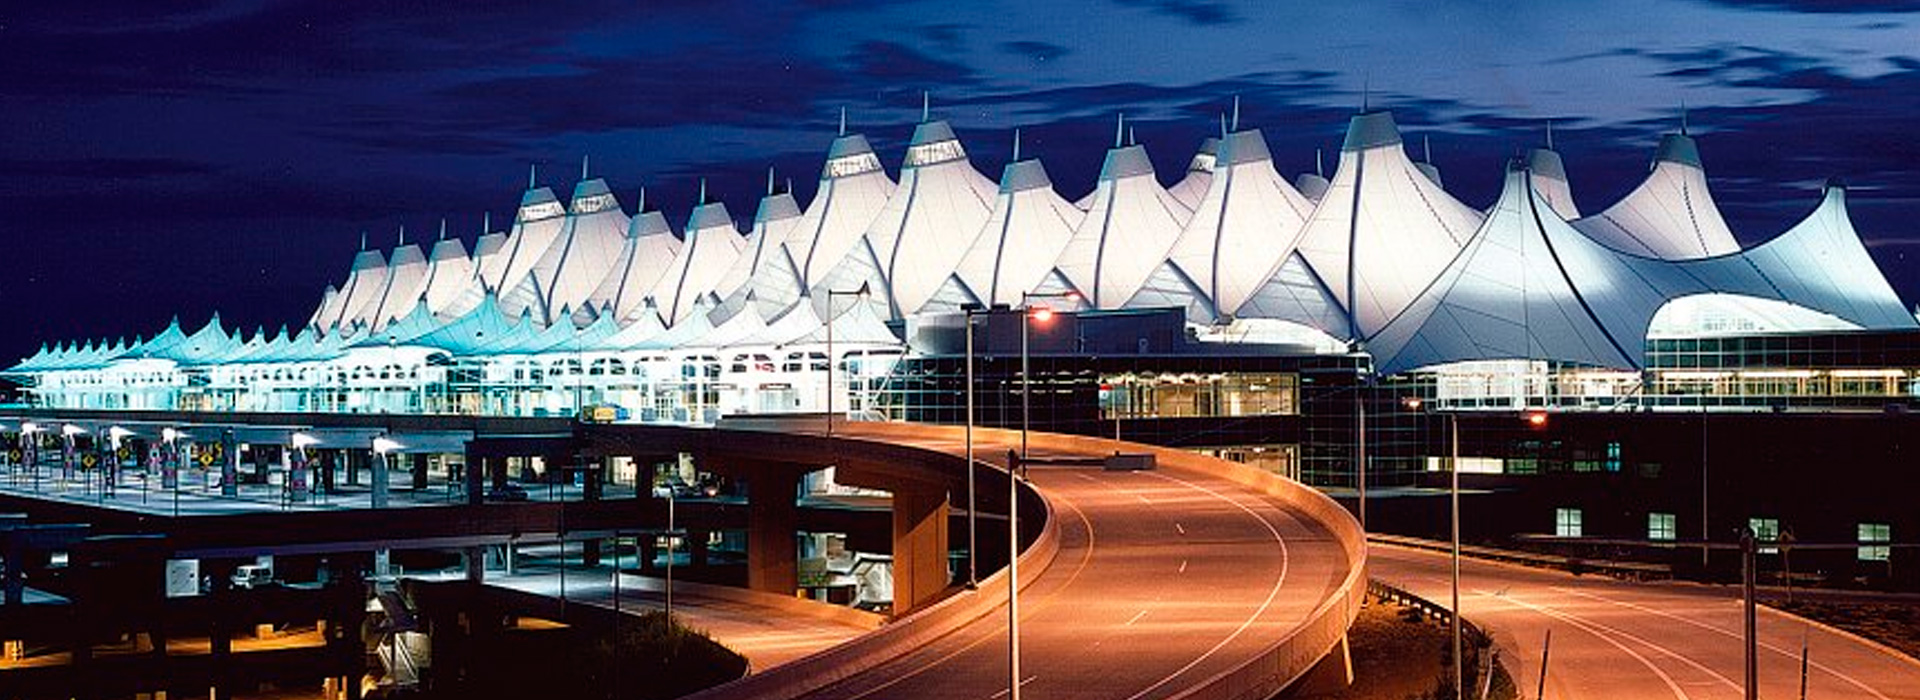 Denver International Airport – Birdair